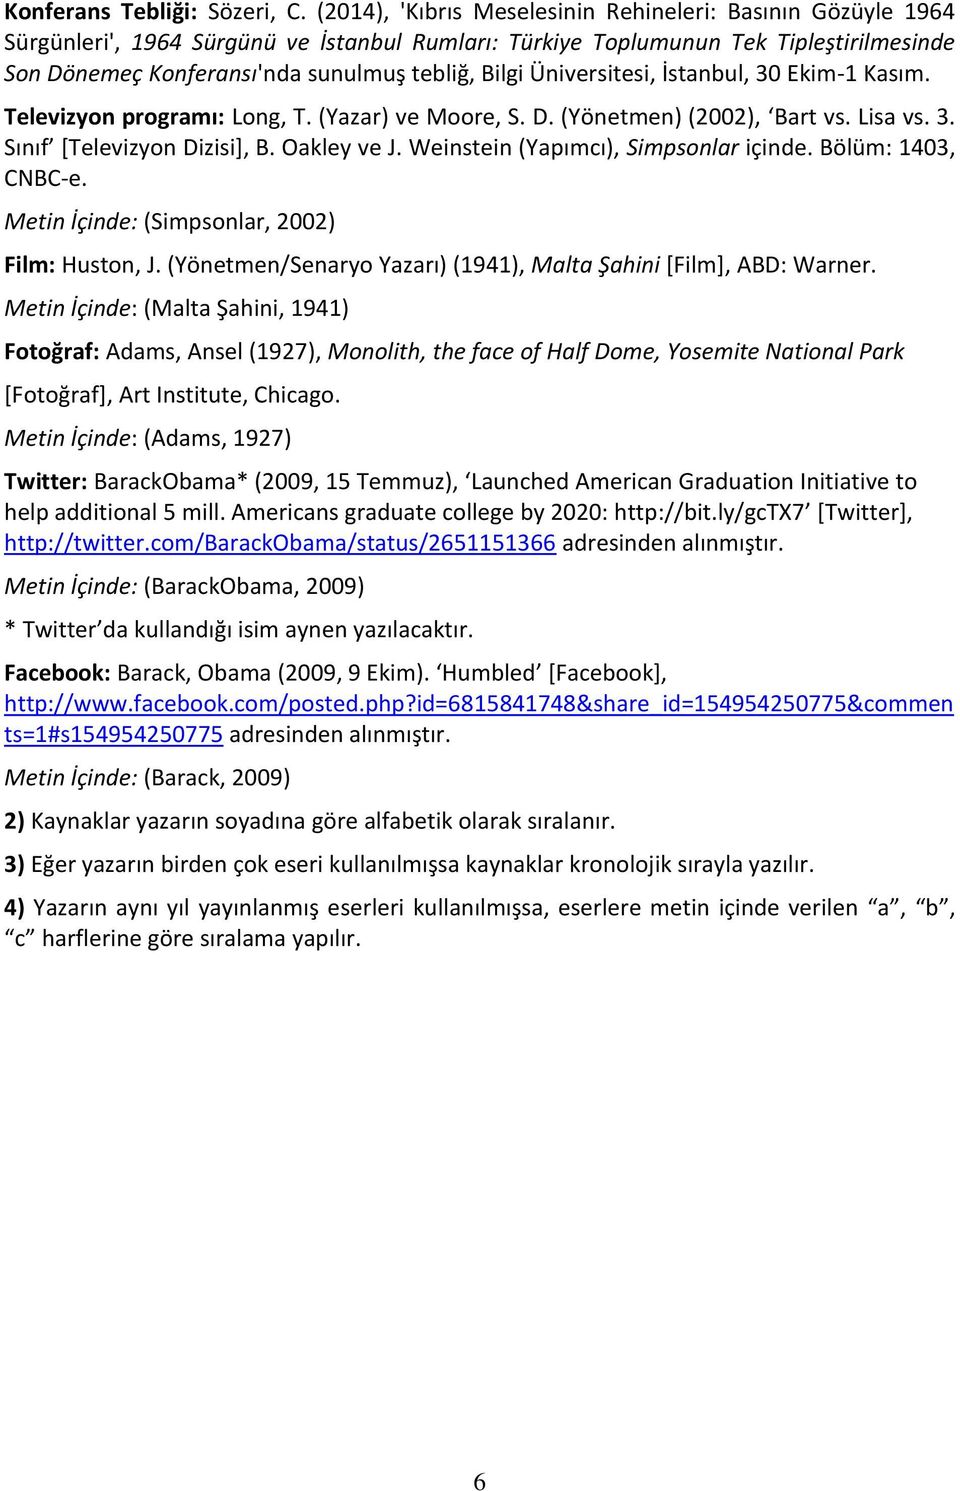 Üniversitesi, İstanbul, 30 Ekim-1 Kasım. Televizyon programı: Long, T. (Yazar) ve Moore, S. D. (Yönetmen) (2002), Bart vs. Lisa vs. 3. Sınıf [Televizyon Dizisi], B. Oakley ve J.